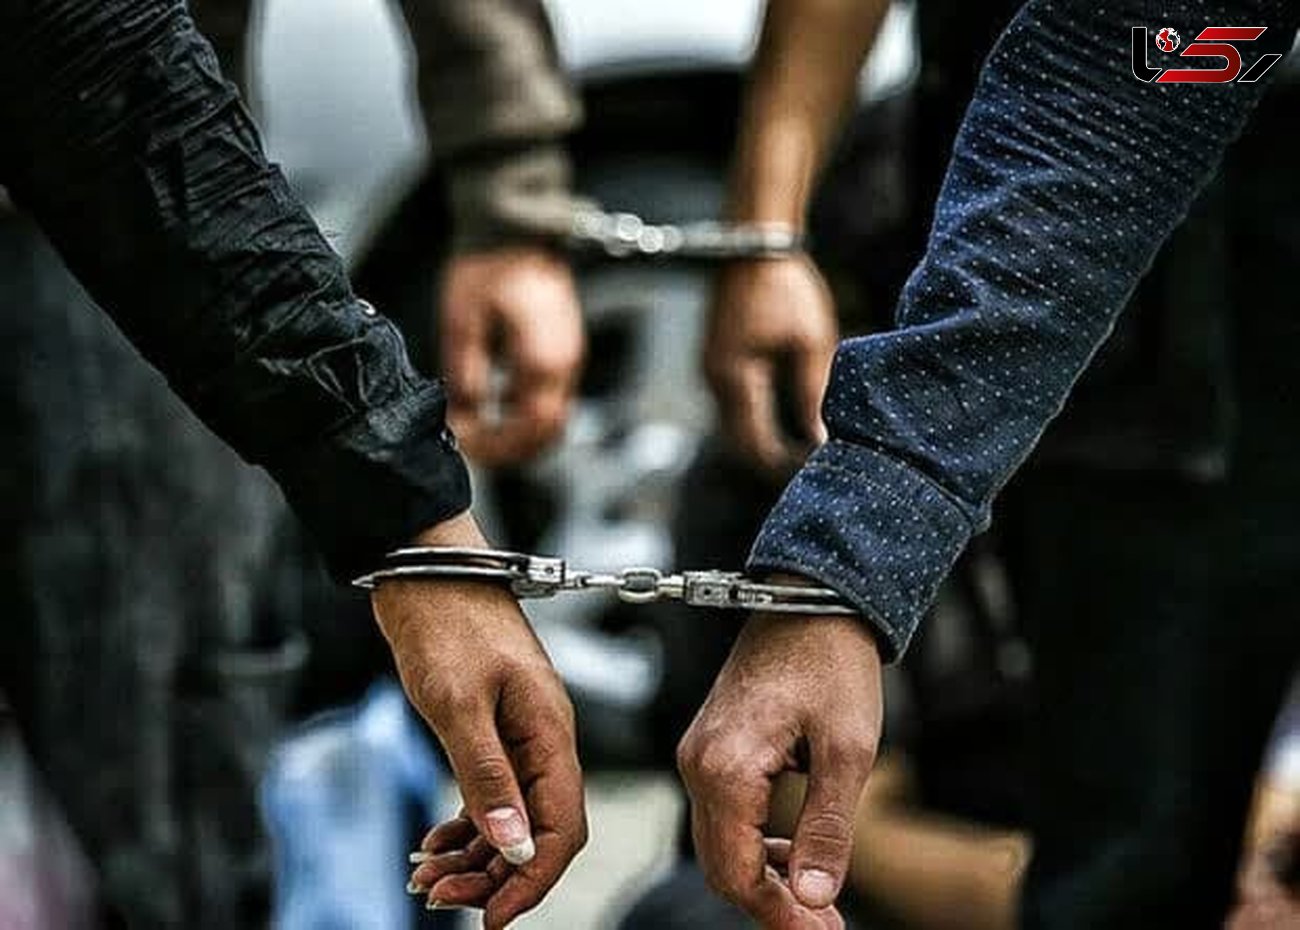 بازداشت مدیران گروه توهین کننده به شهدای حادثه تروریستی کرمان در بویین زهرا